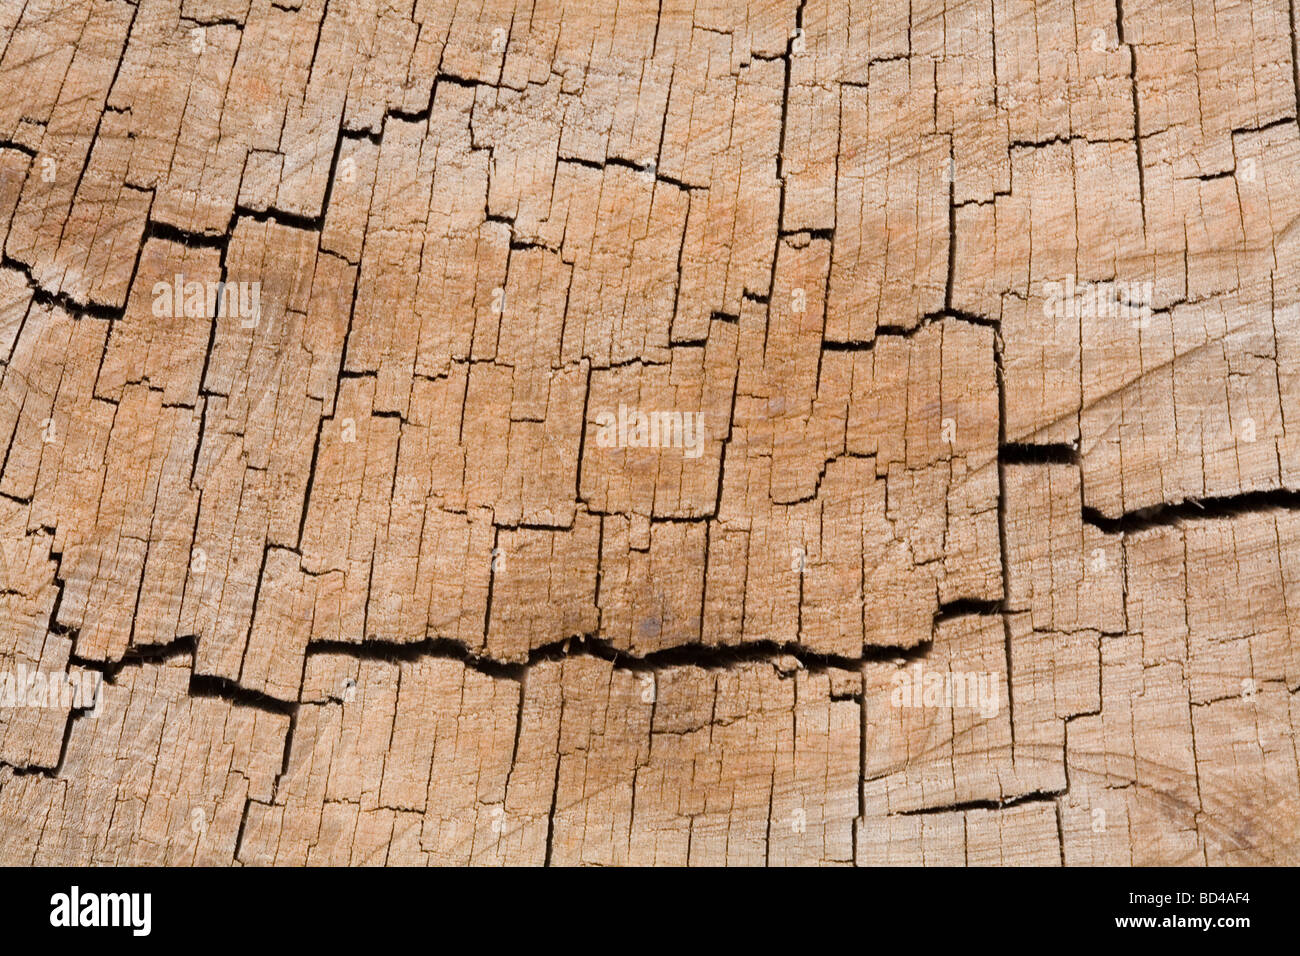 Baum-Ringe in einem Closeup Querschnitt eines Baumstammes Stockfoto